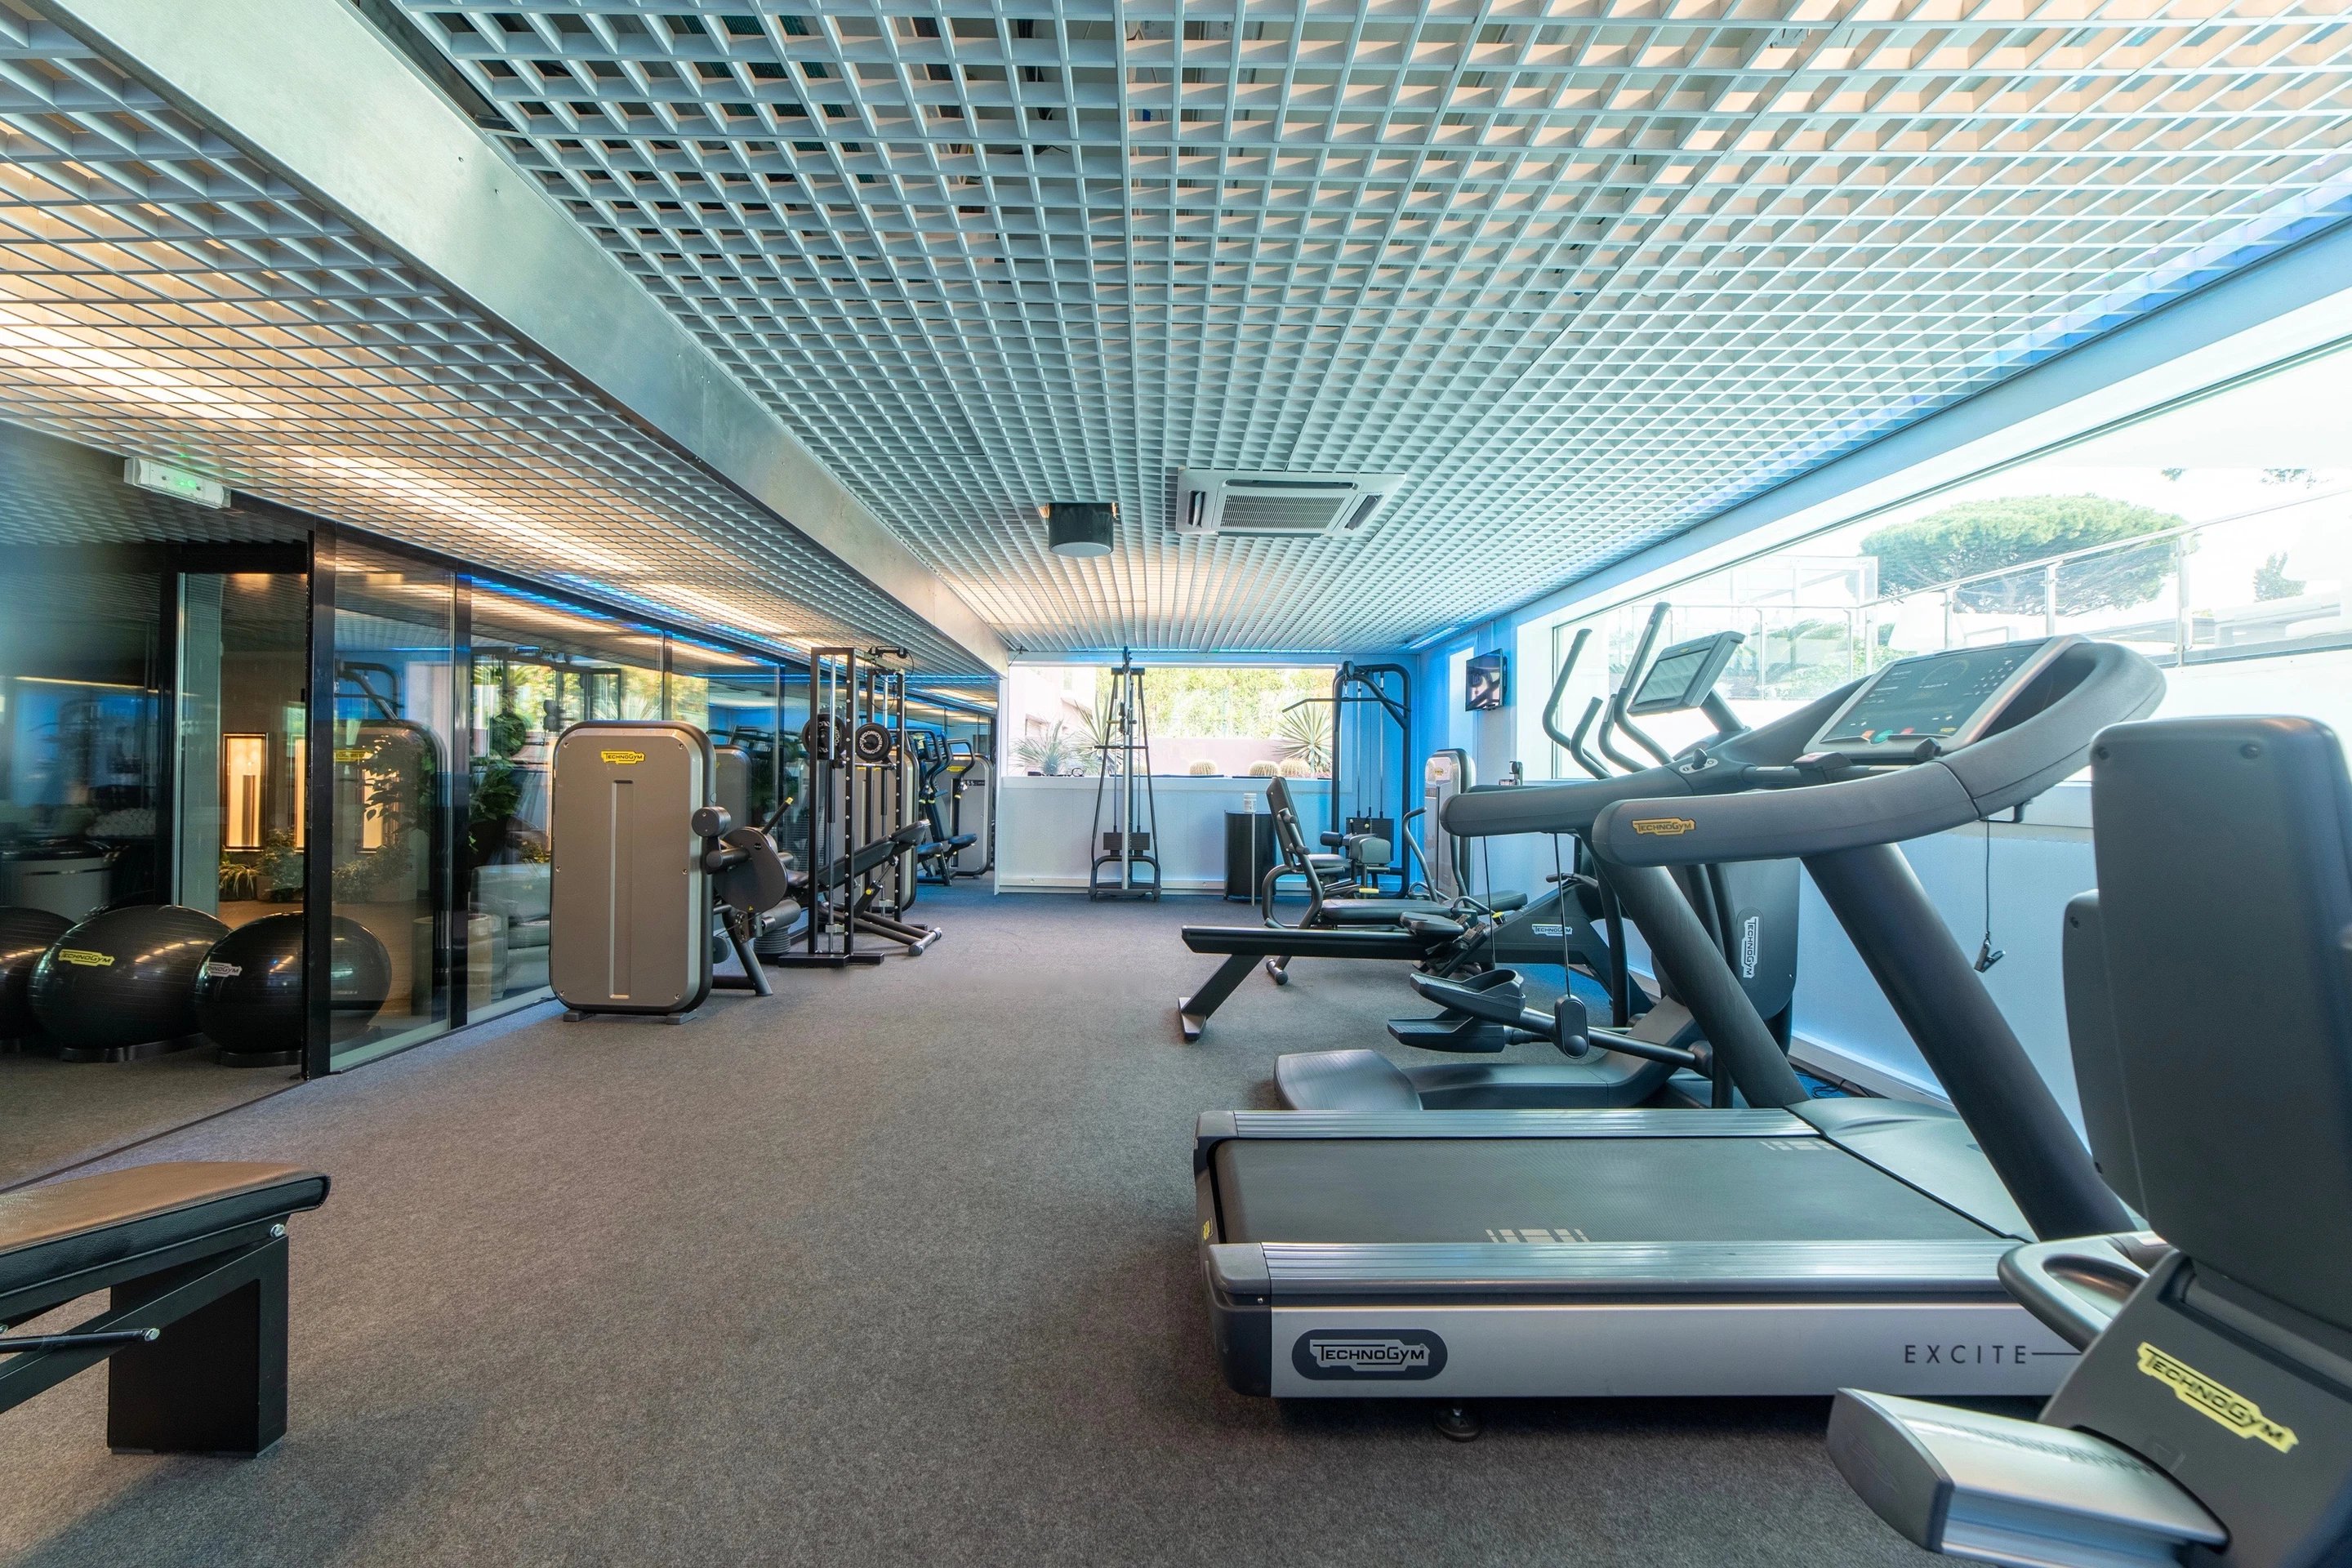 Salle de sport - Fitness - Kube Hotel Saint-Tropez - Côte d'Azur